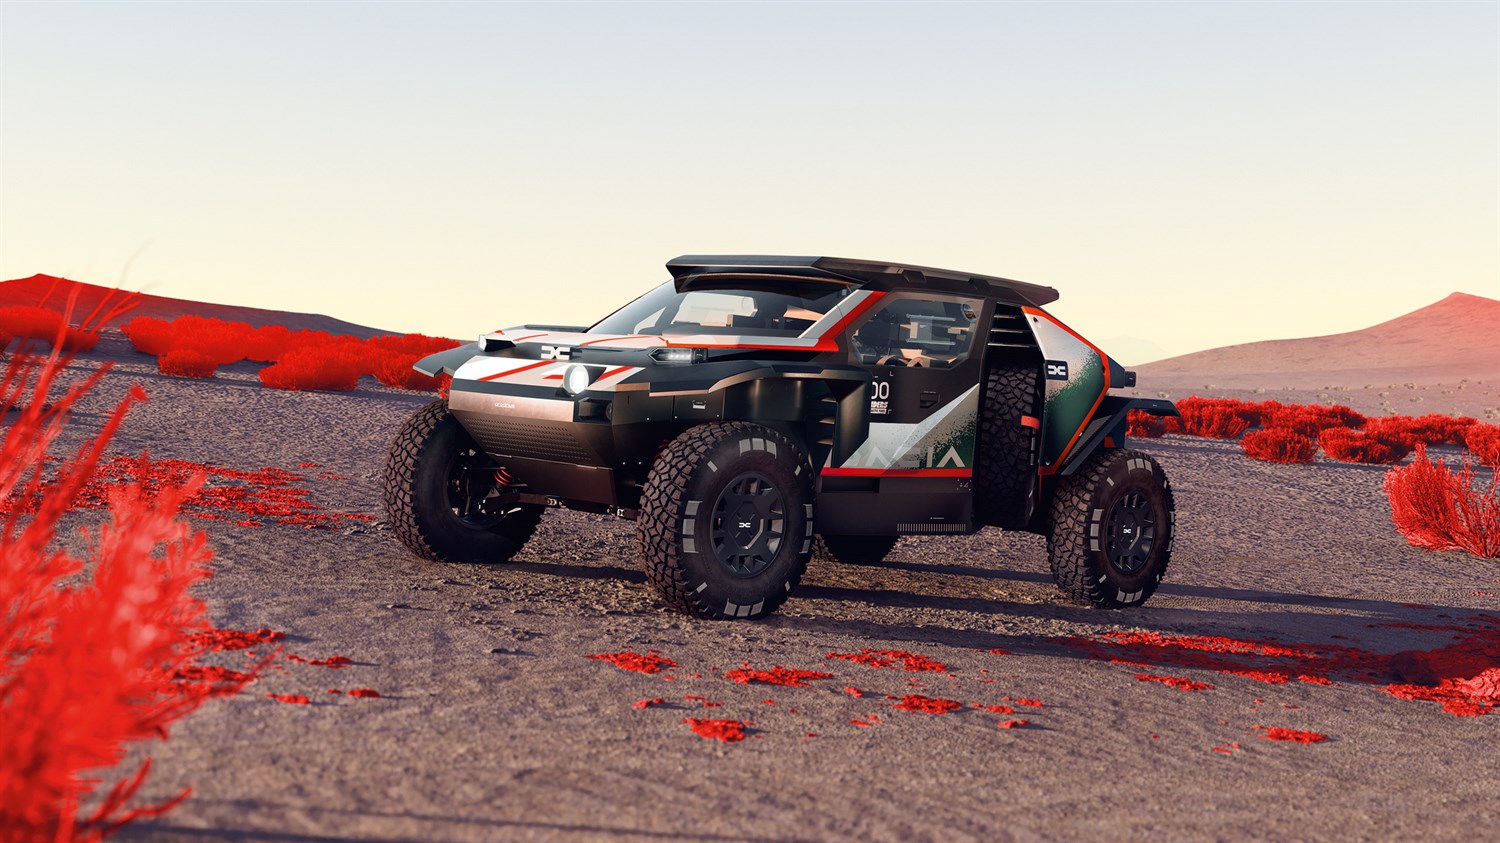 Dacia Dakar 2025